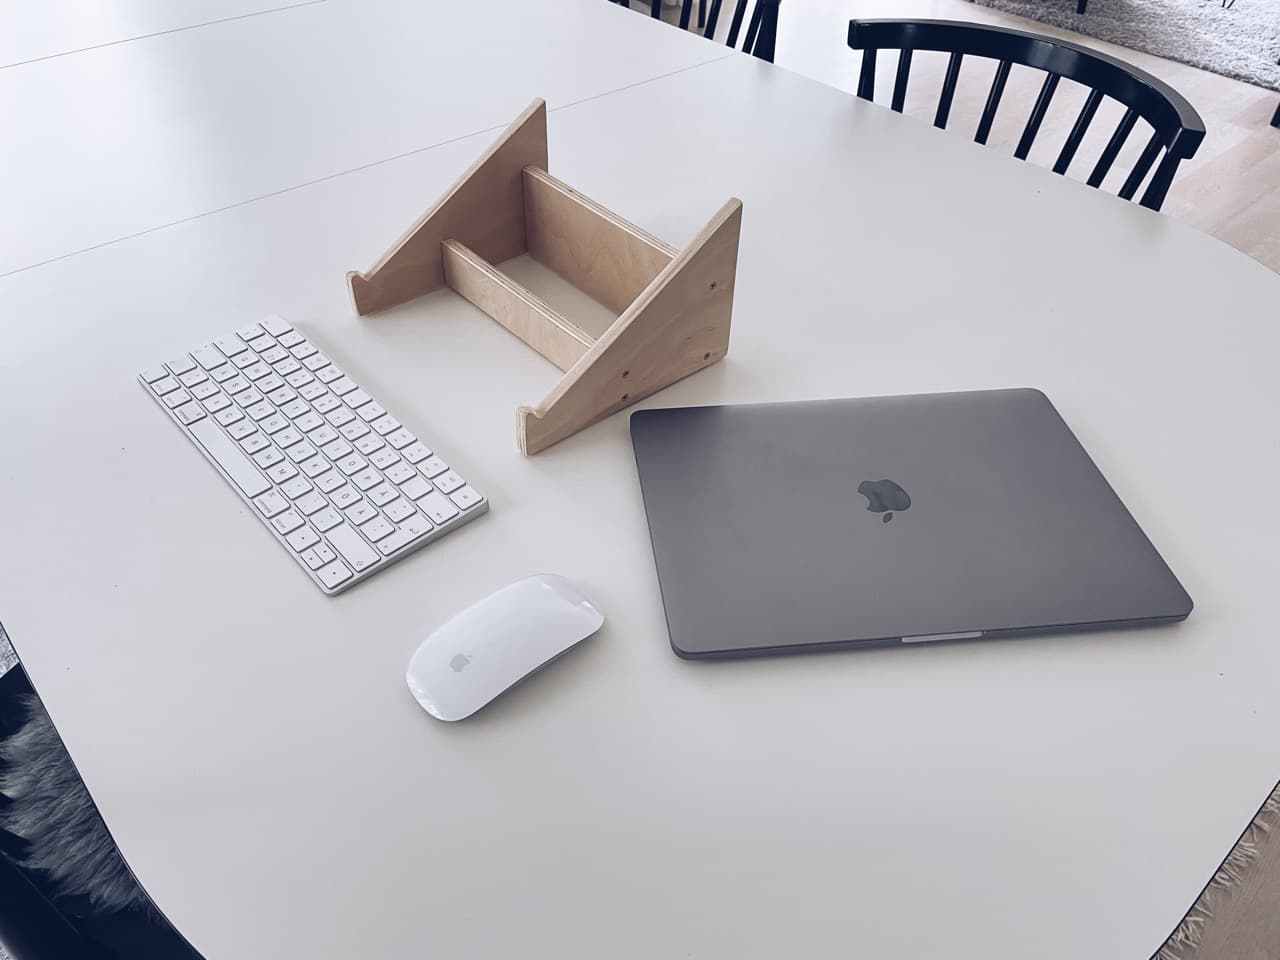 Bygg ditt egna minimalistiska laptopstativ av trä